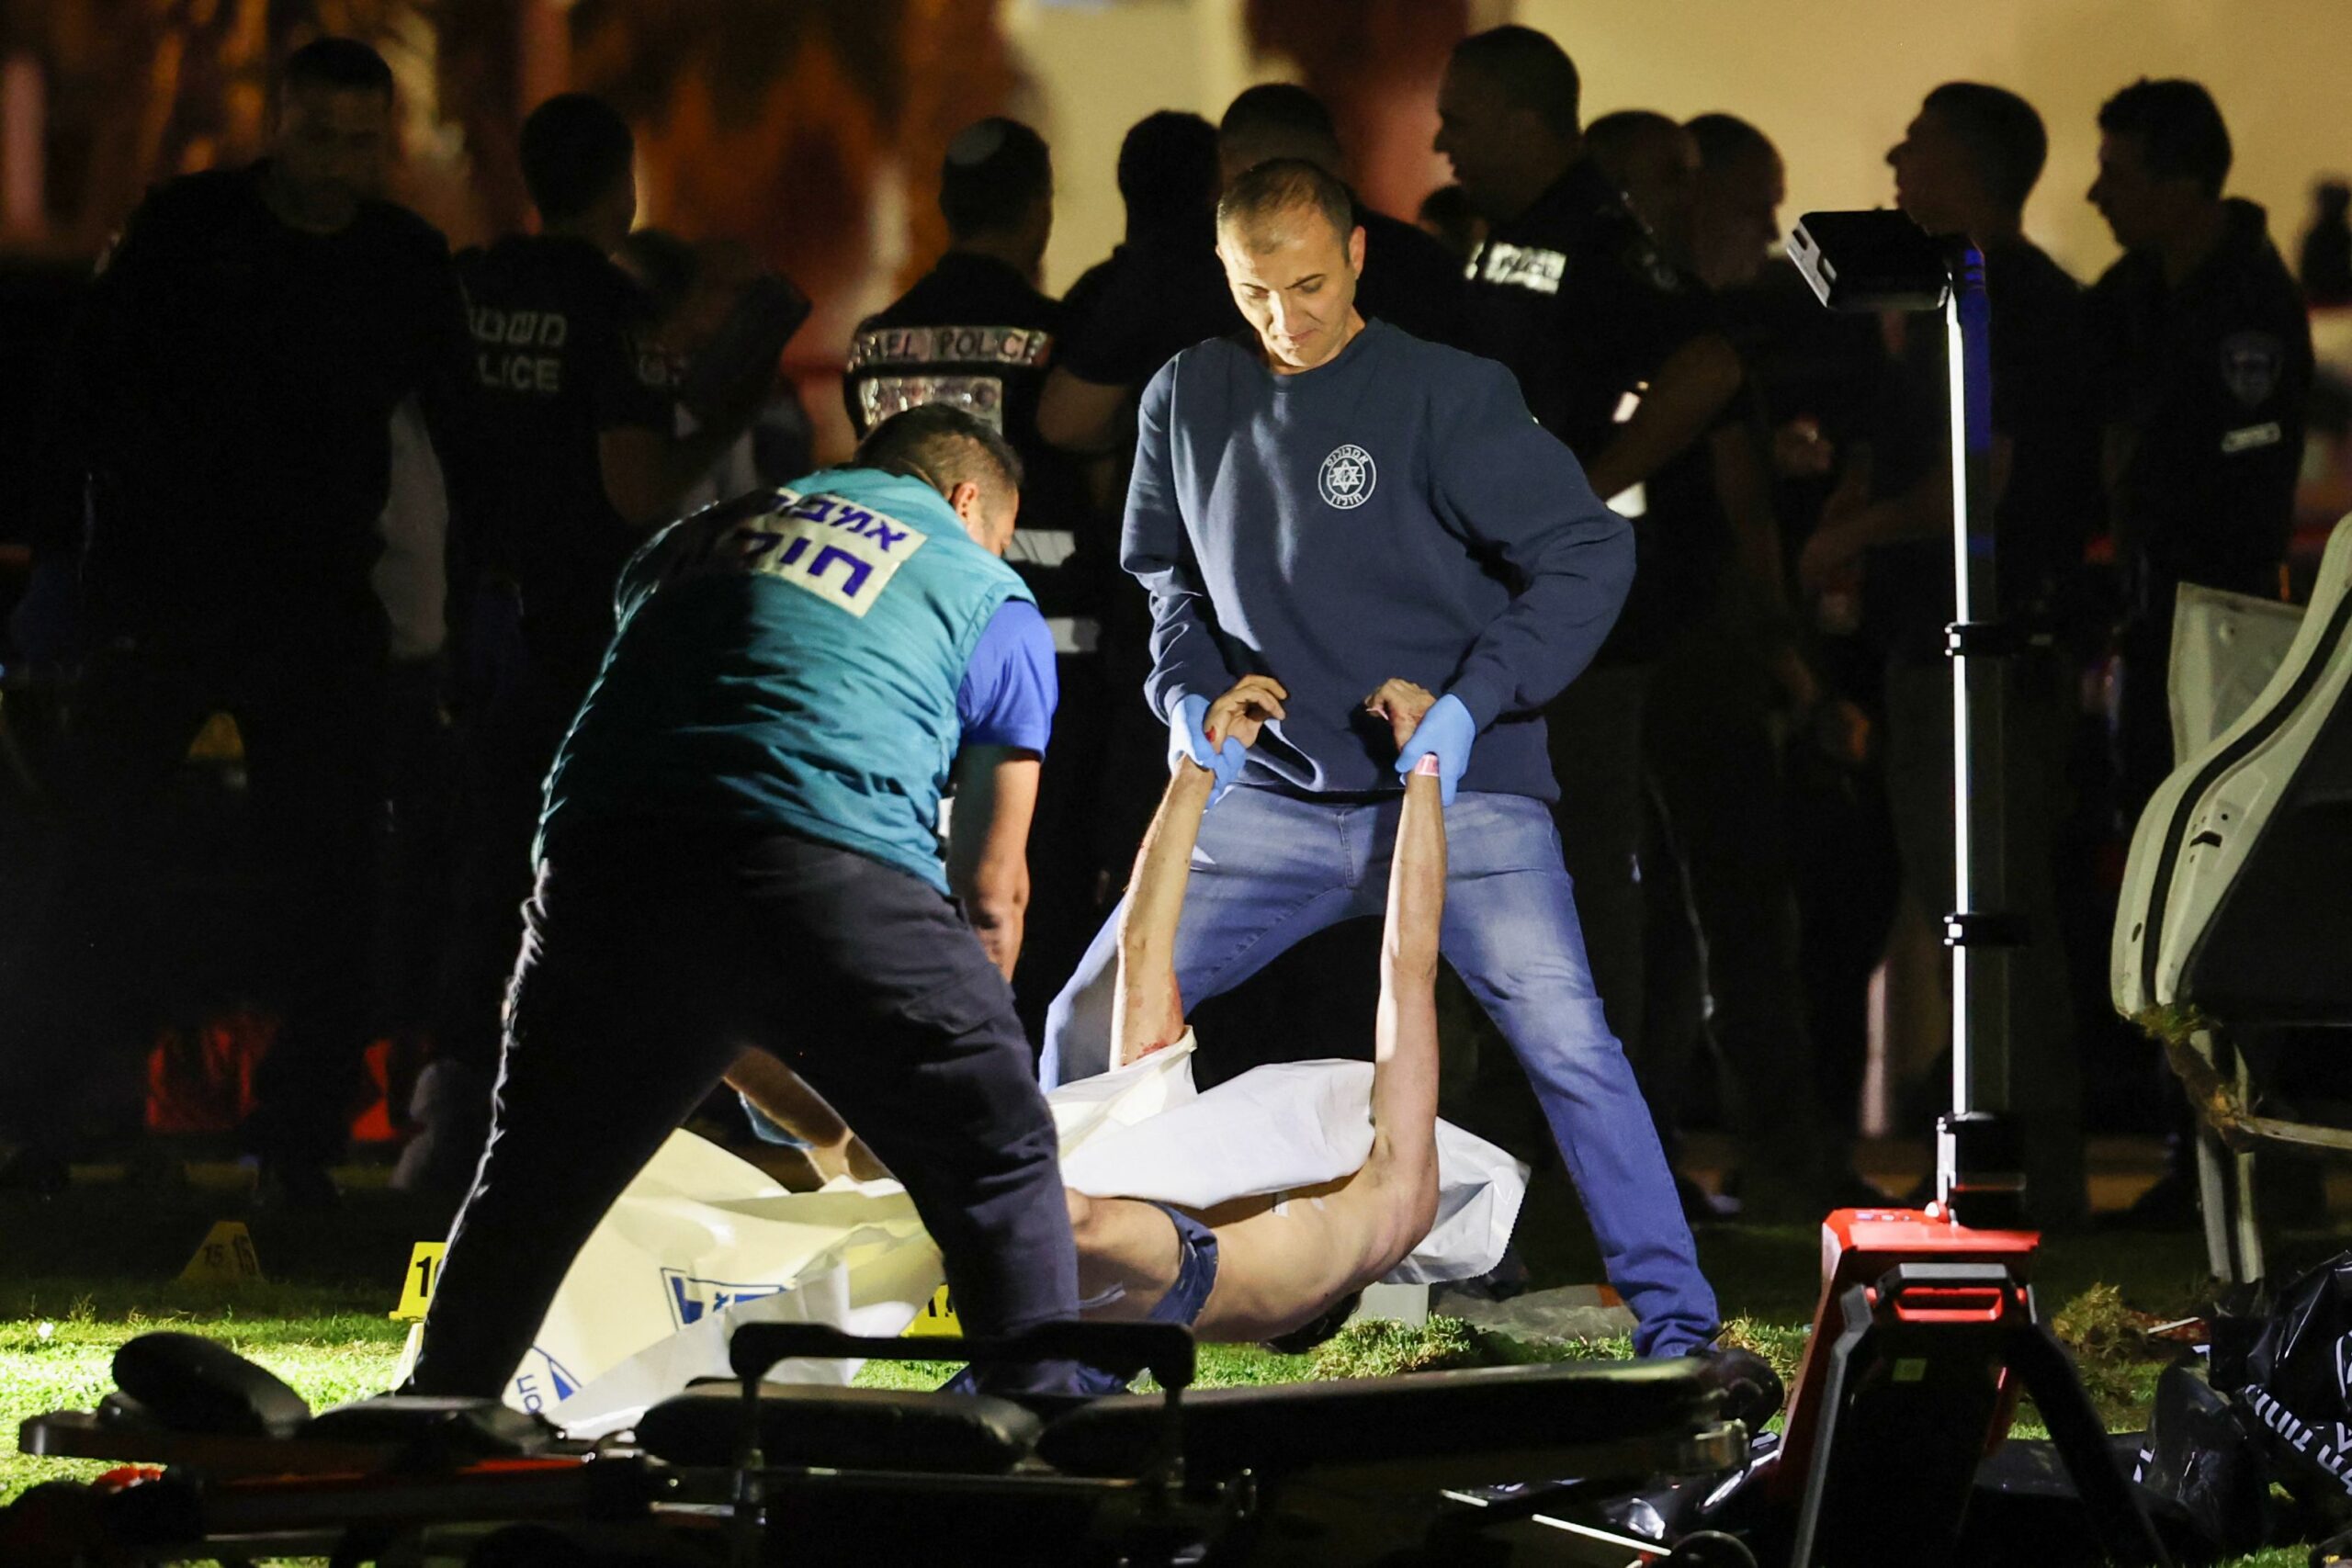 Израильская полиция убирает тело нападавшего с места нападения в Тель-Авиве 7 апреля 2023 года. Фото AHMAD GHARABLI / AFP / Scanpix / LETA.